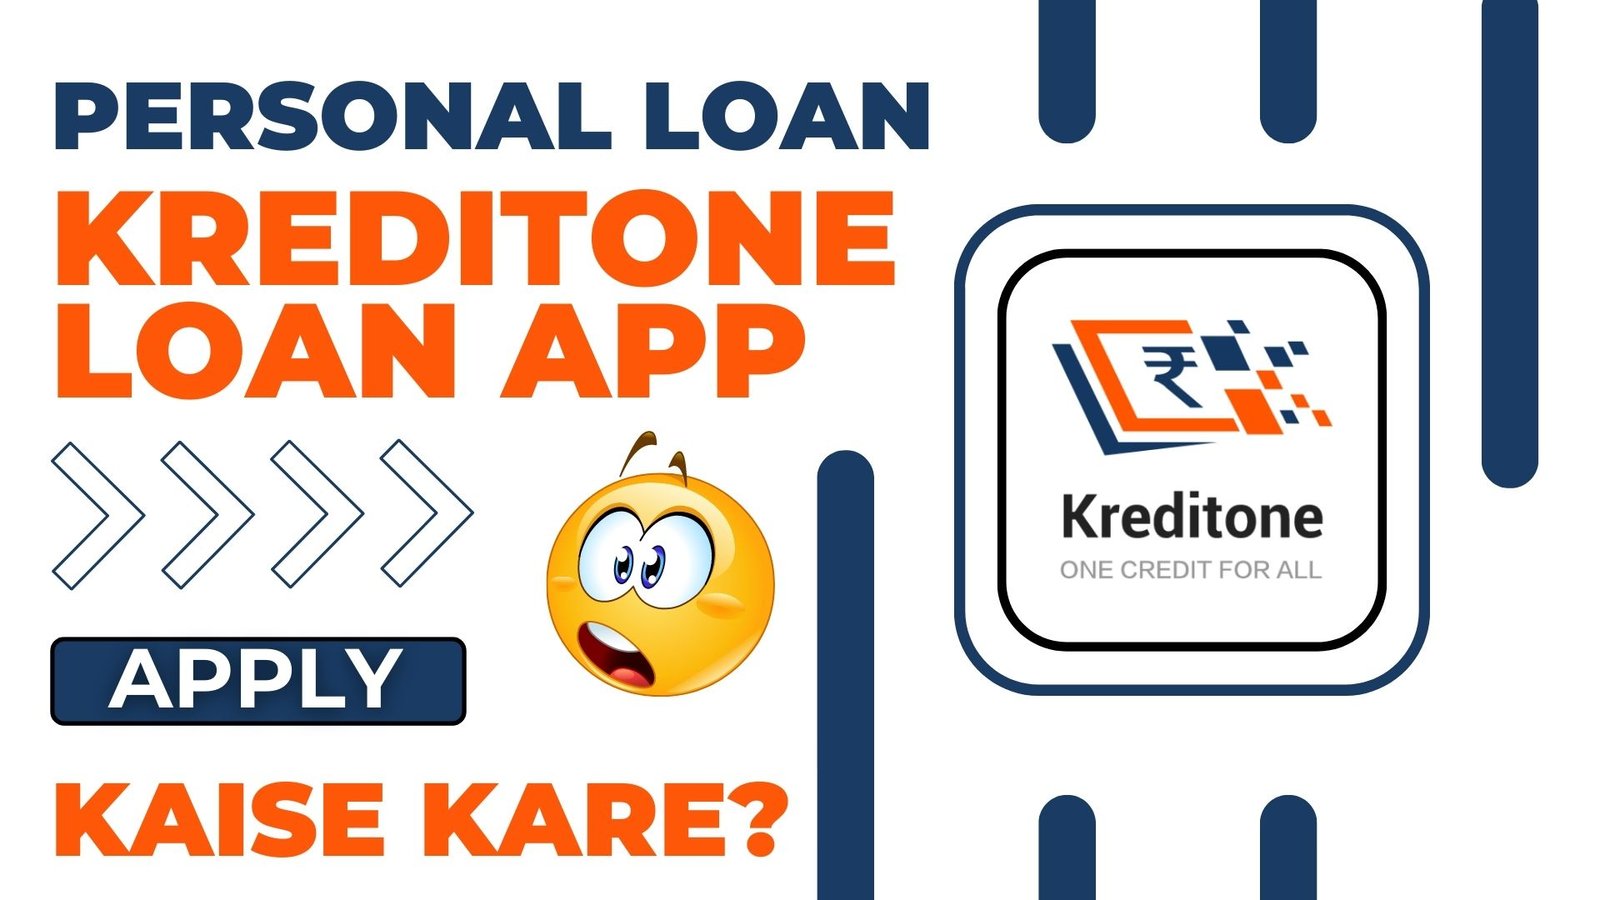 KreditOne Loan App से लोन कैसे लें?